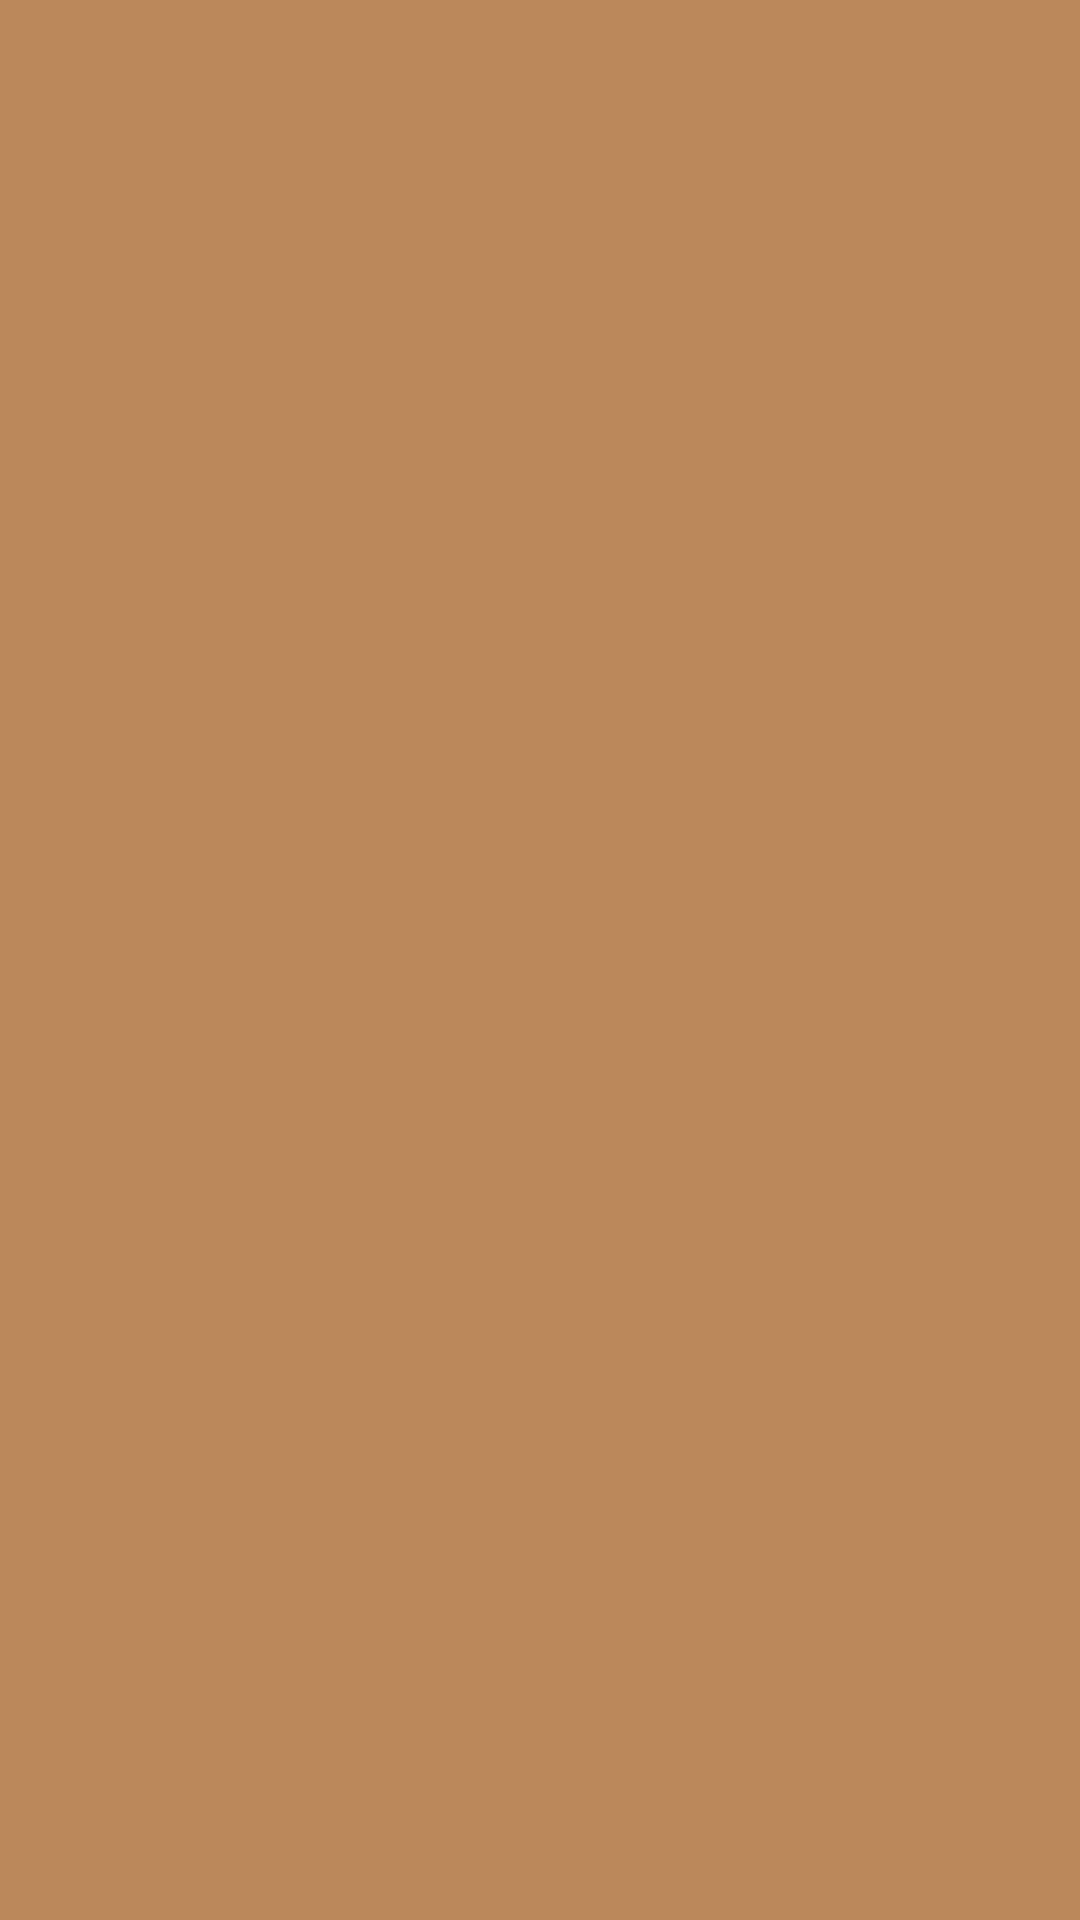 1080x1920 Deer Solid Color Background